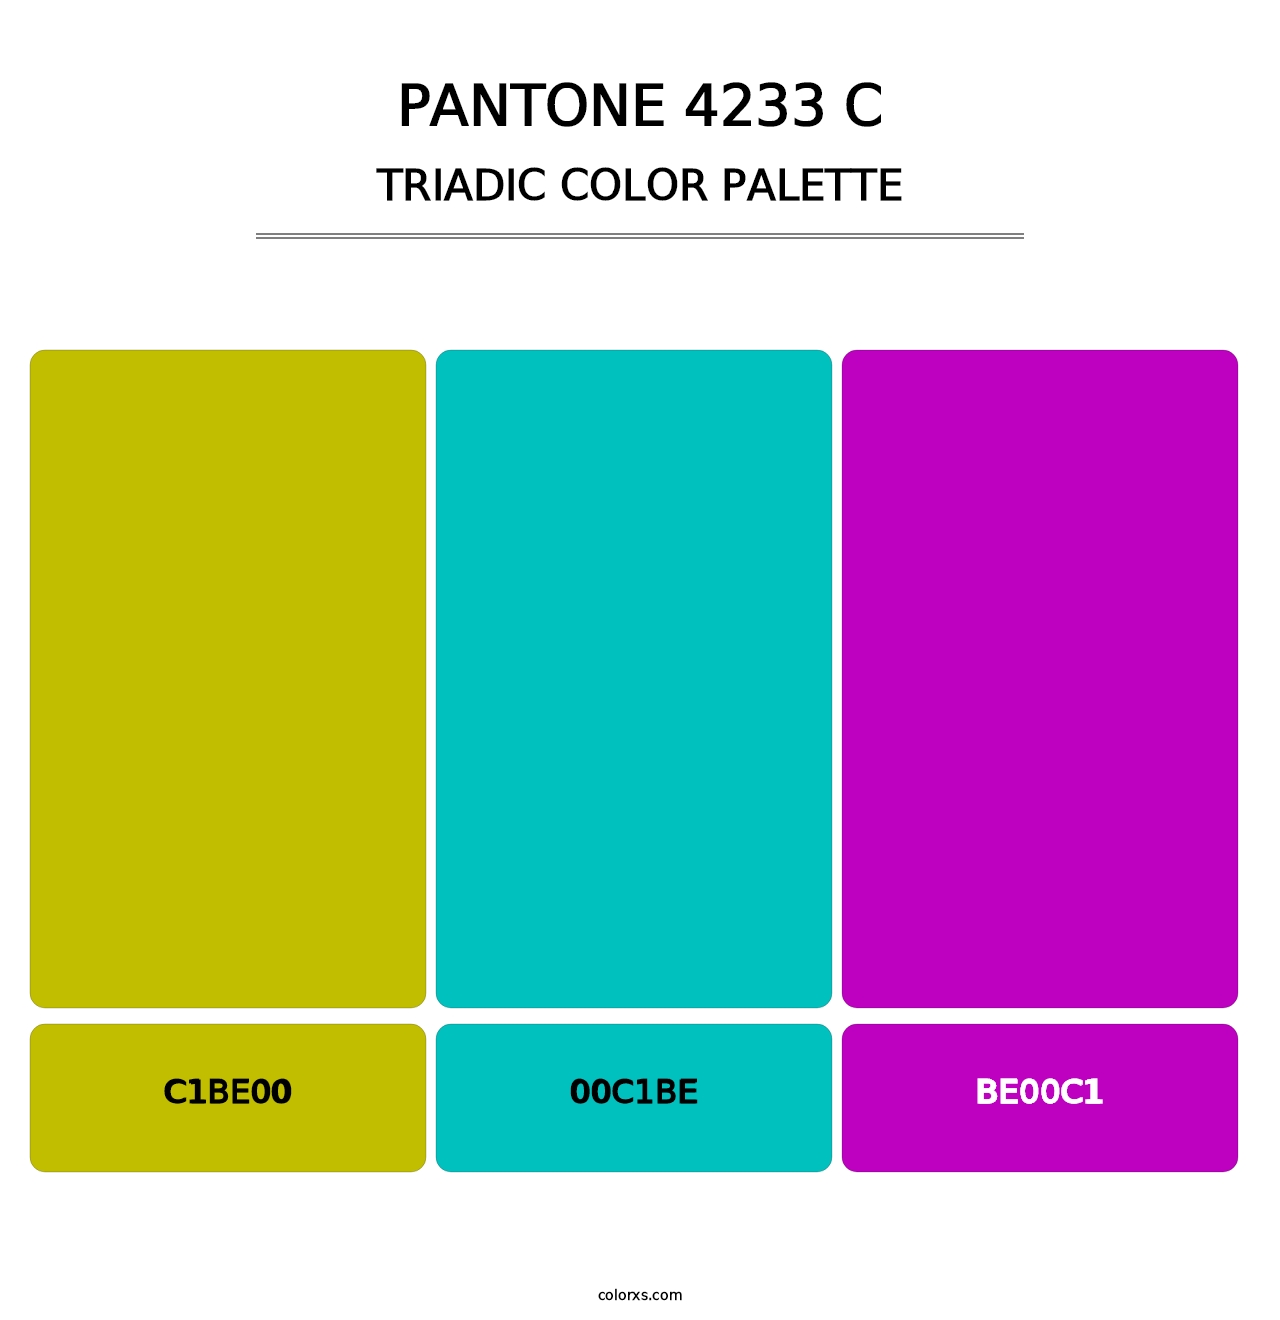 PANTONE 4233 C - Triadic Color Palette